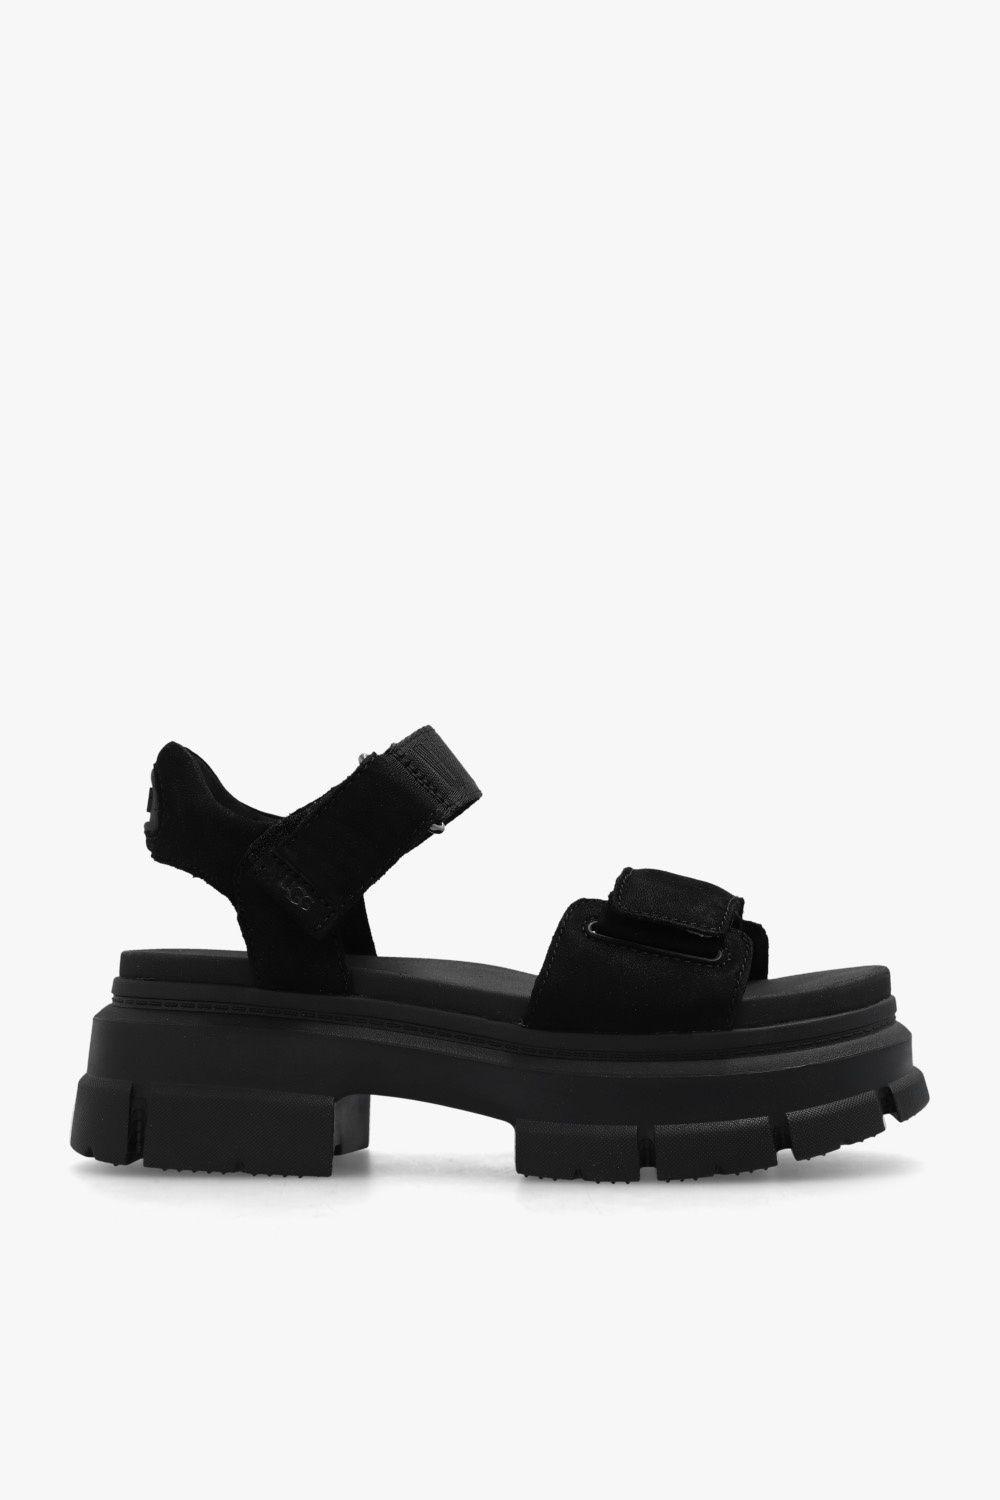 UGG 'ashton' Platform Sandals in Black | Lyst